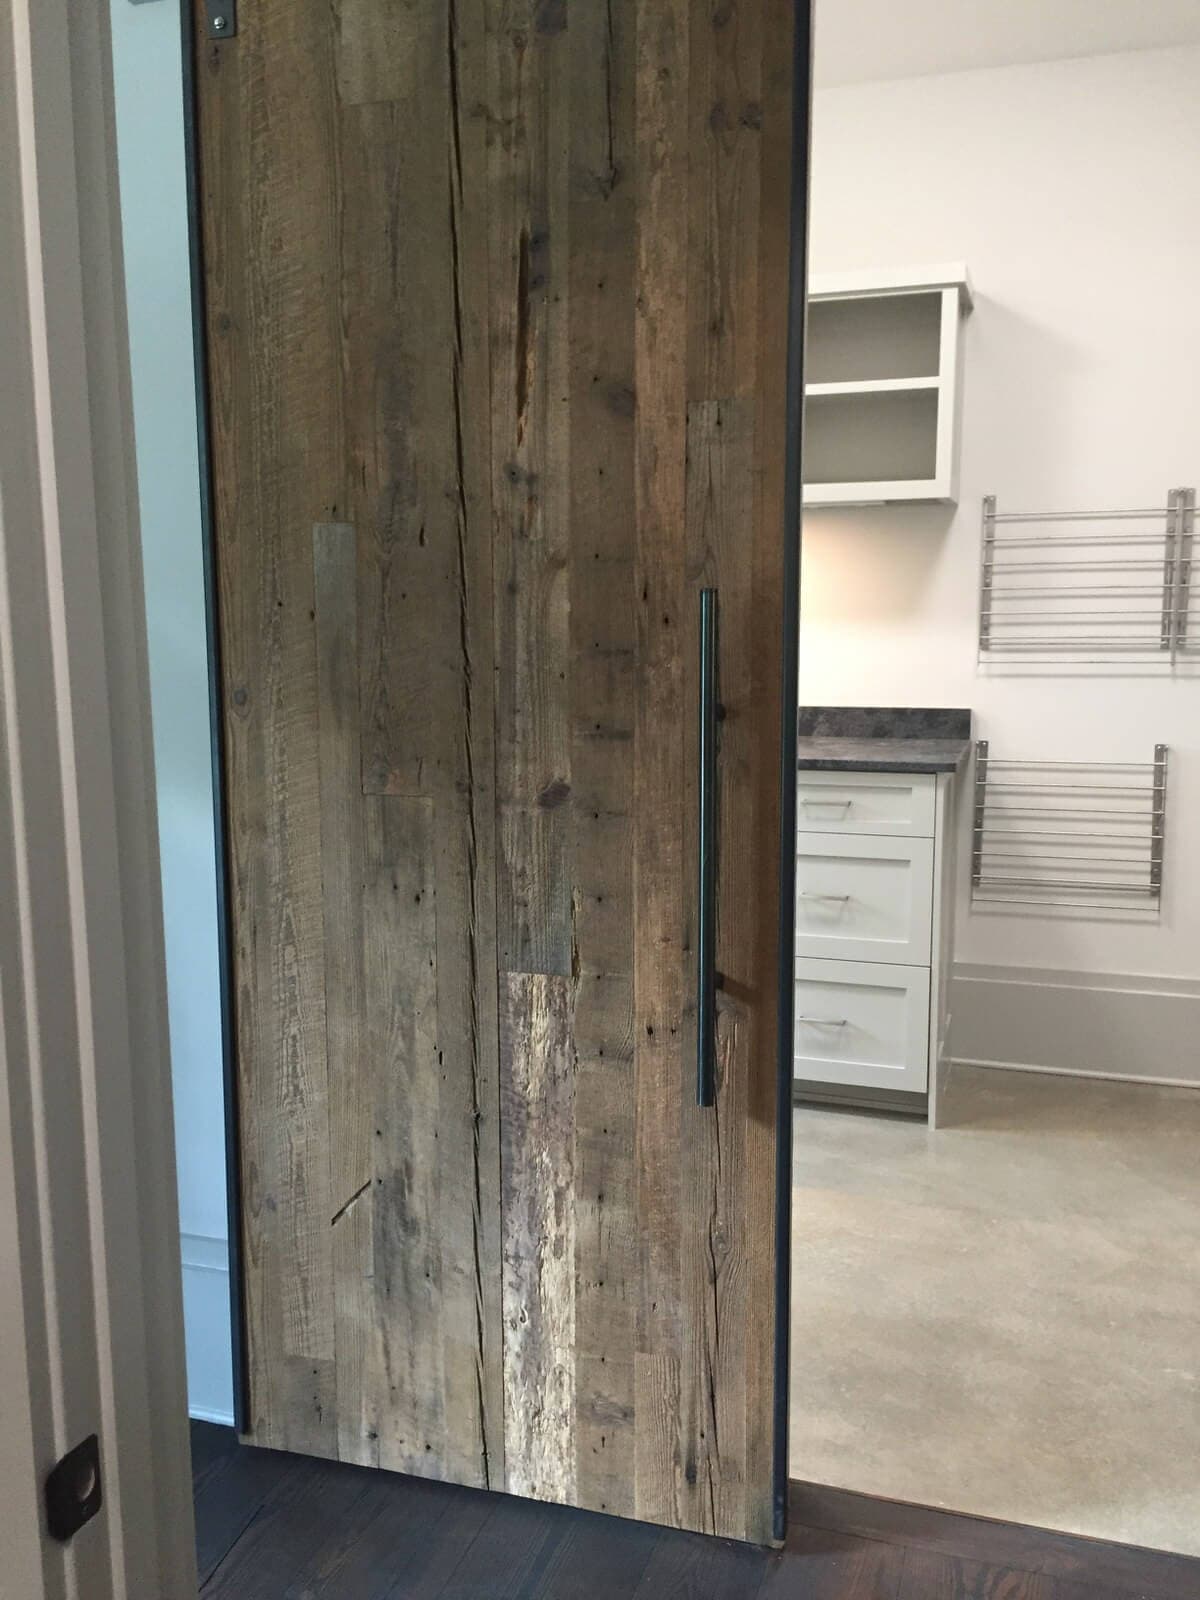 Original surface hardwood door